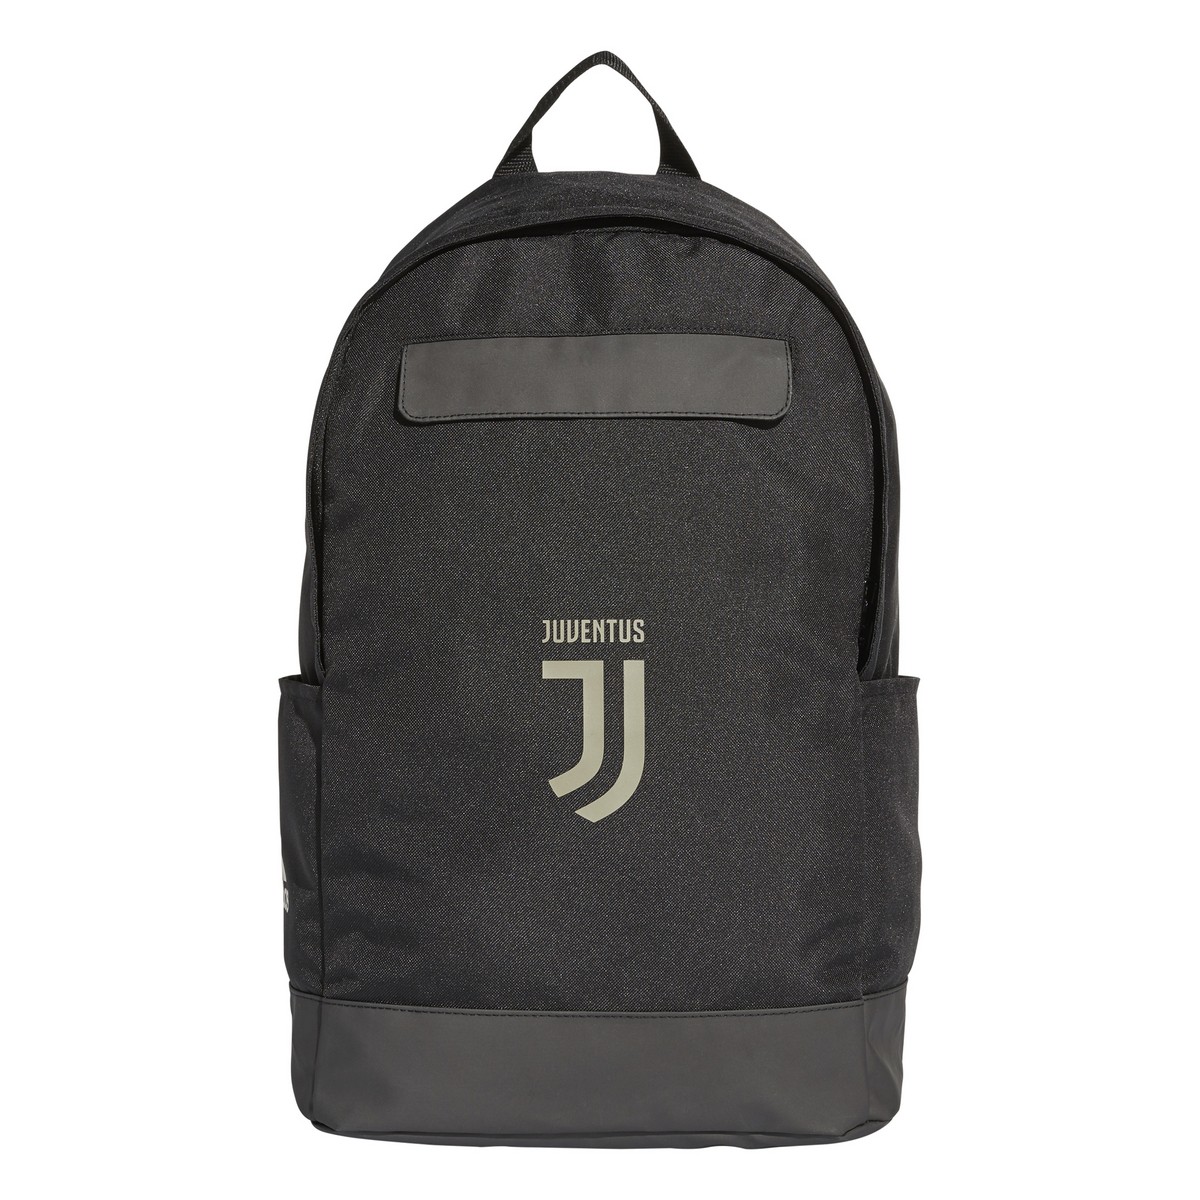 Juventus FC backpack team black 2018/19 